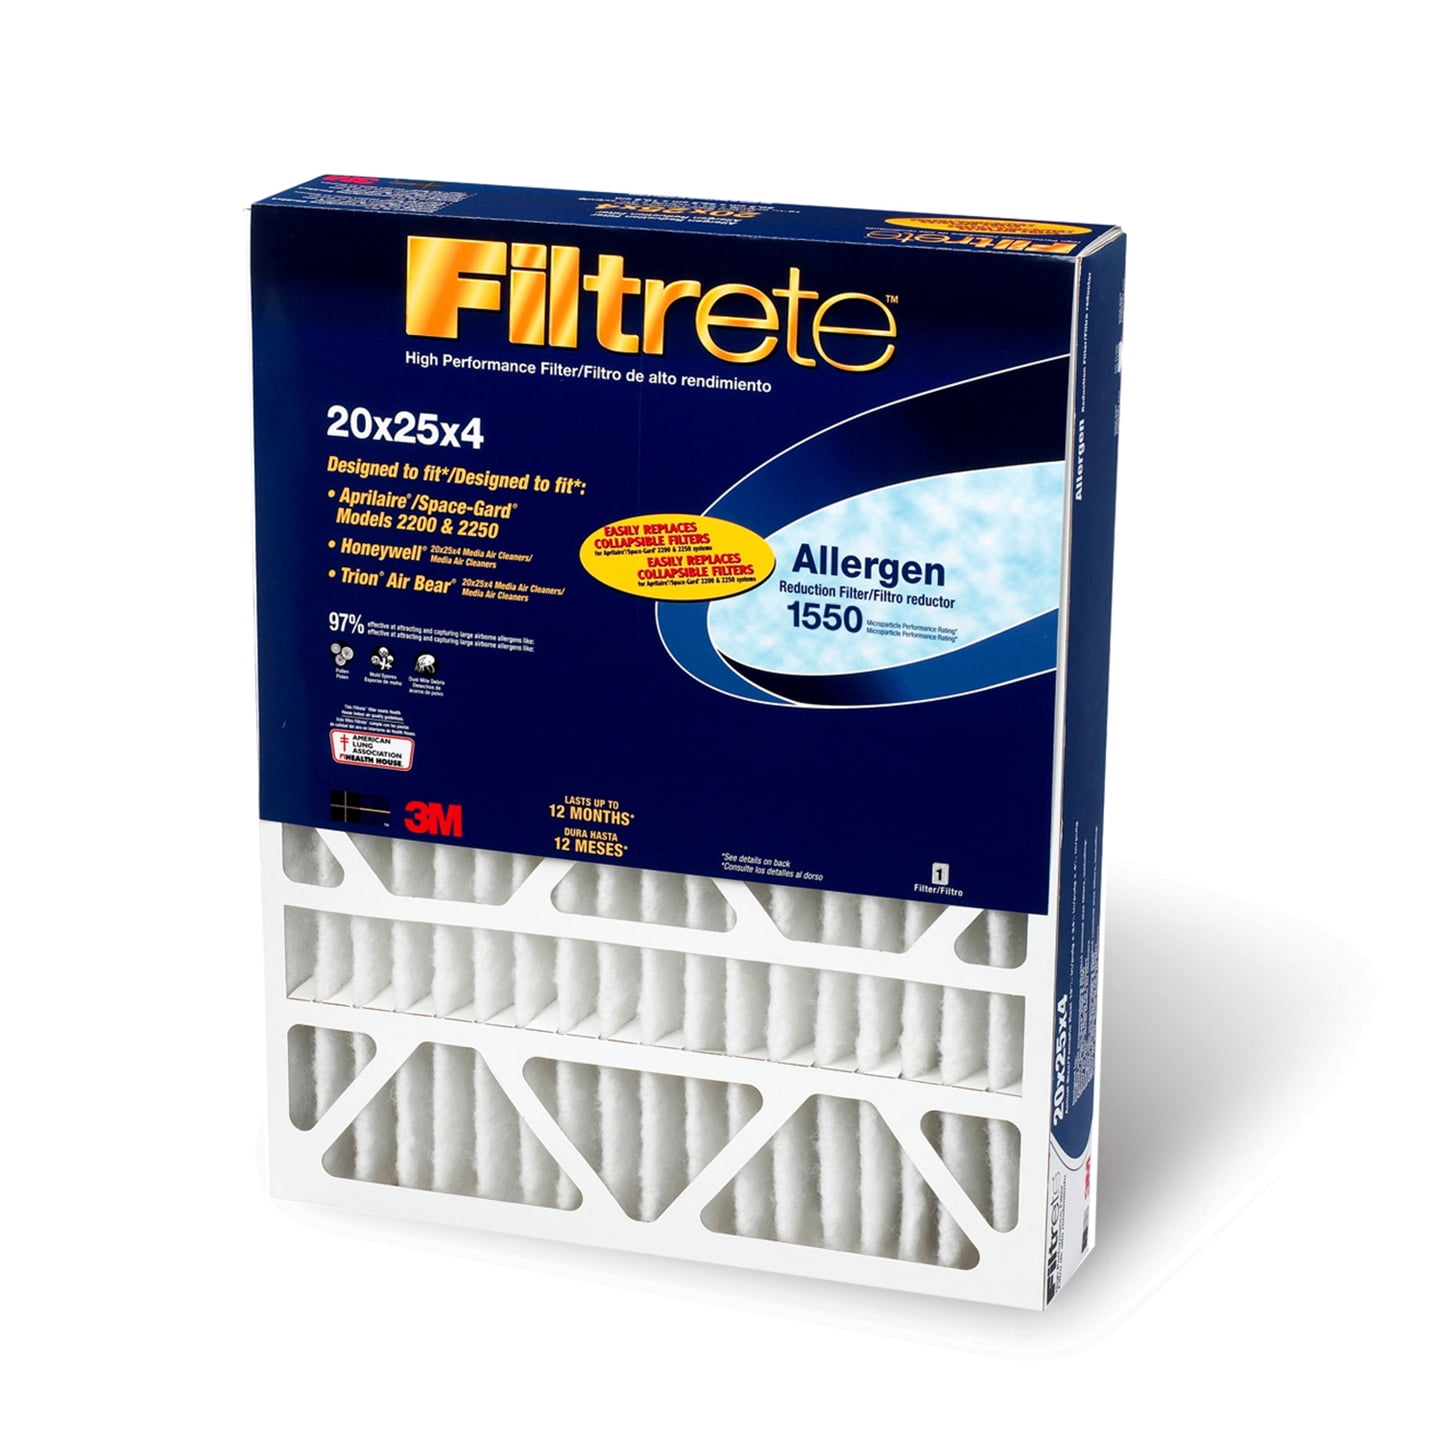 3M Filtrete 20x25x4 Allergen Reduction Air Filter Walmart 